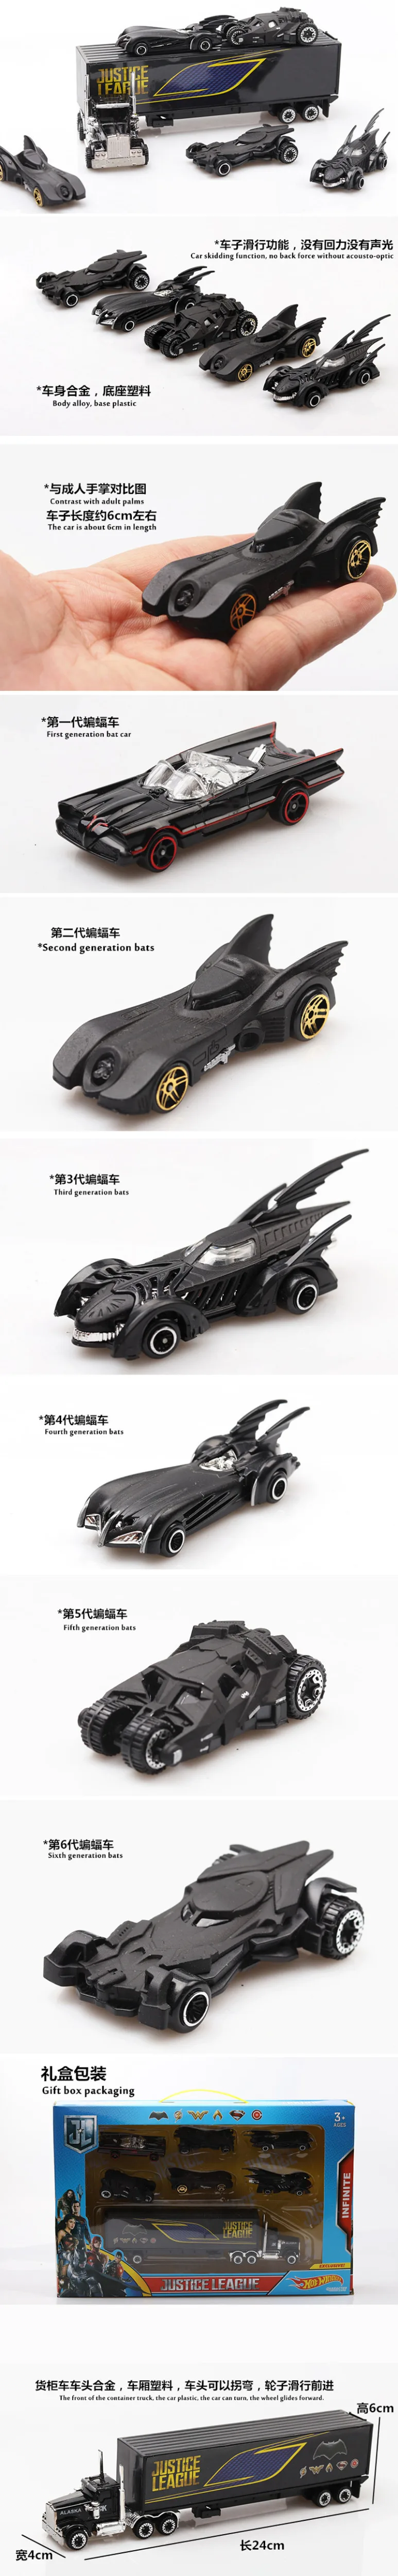 Сплав гоночный супер игрушка автомобиль набор подарок тайна черный подарочная коробка черная летучая мышь Игрушечная машина из сплава